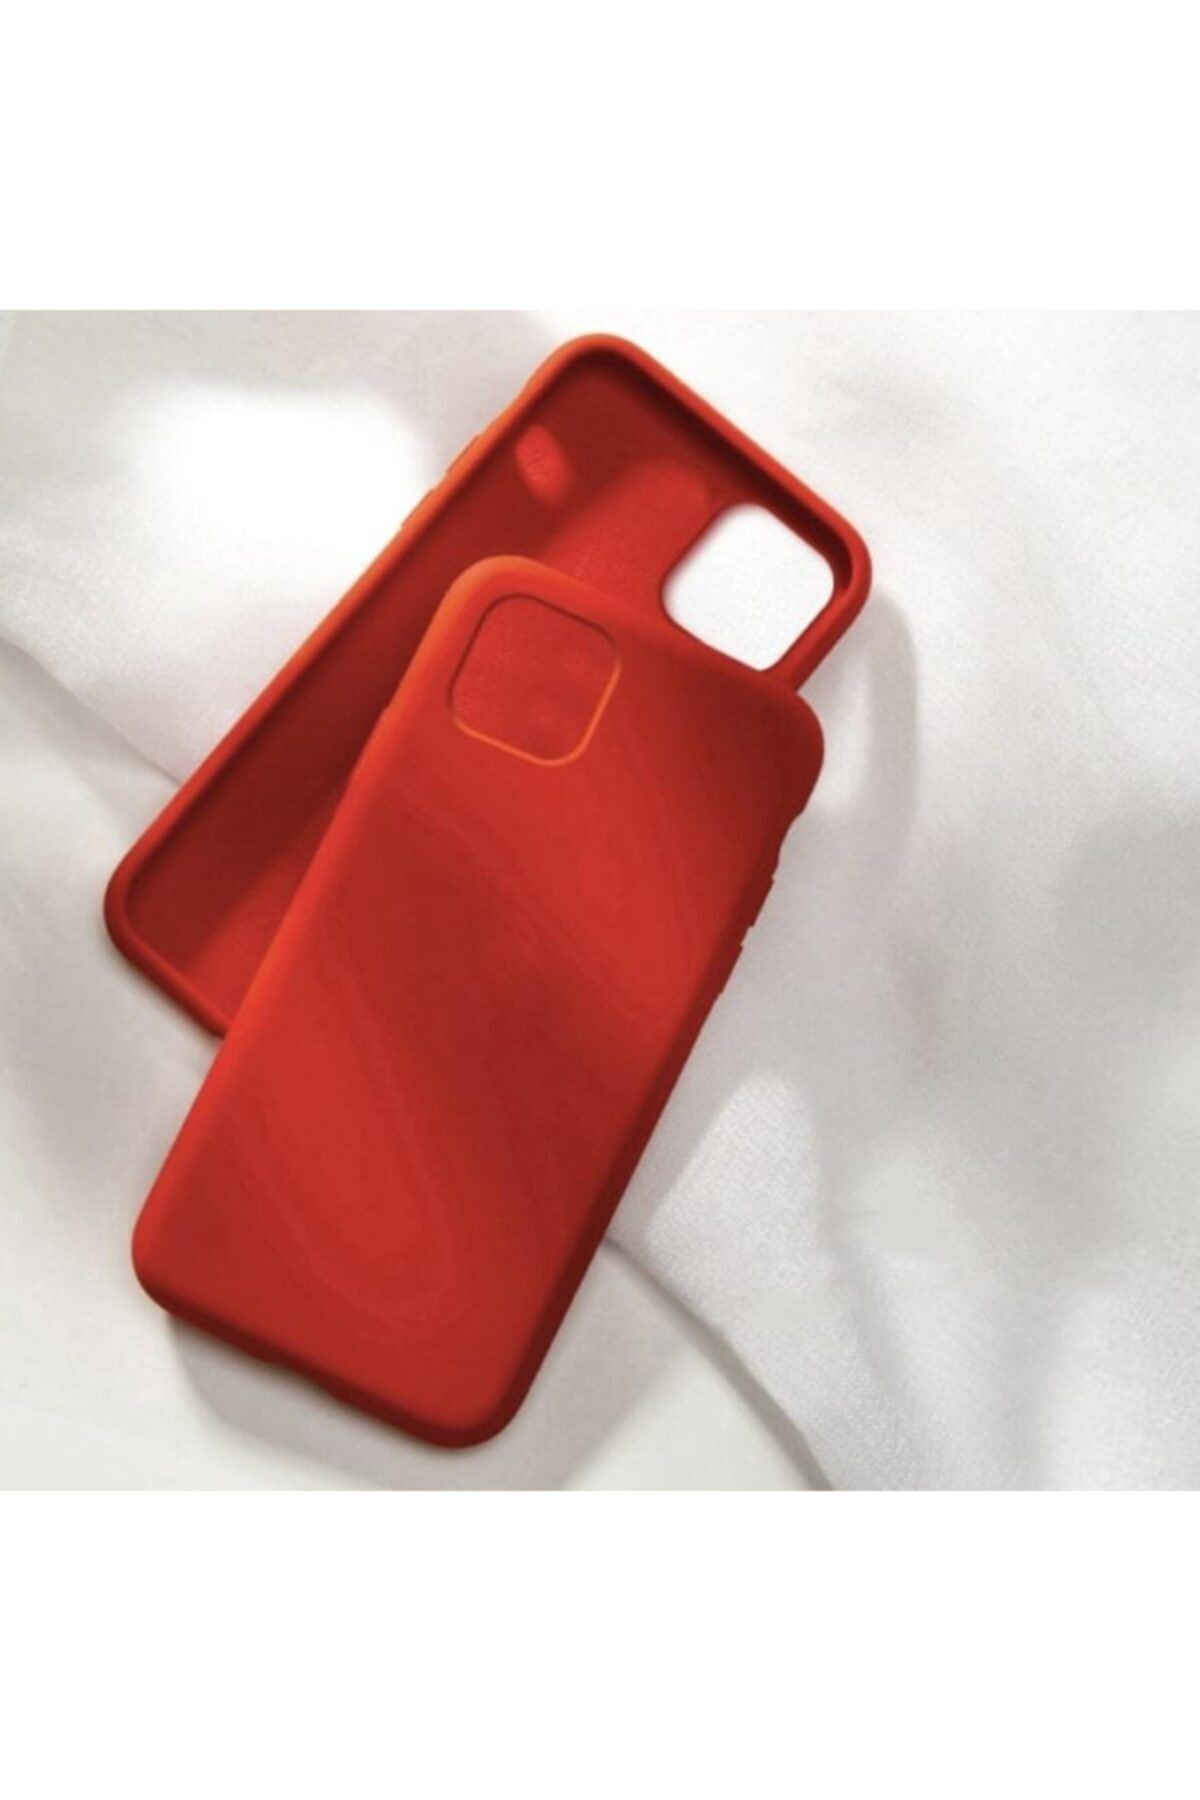 Teknoloji Gelsin Iphone 11 Pro Max Premium Lansman Içi Kadife Silikon Kılıf Iphone 11pro Max - Kırmızı